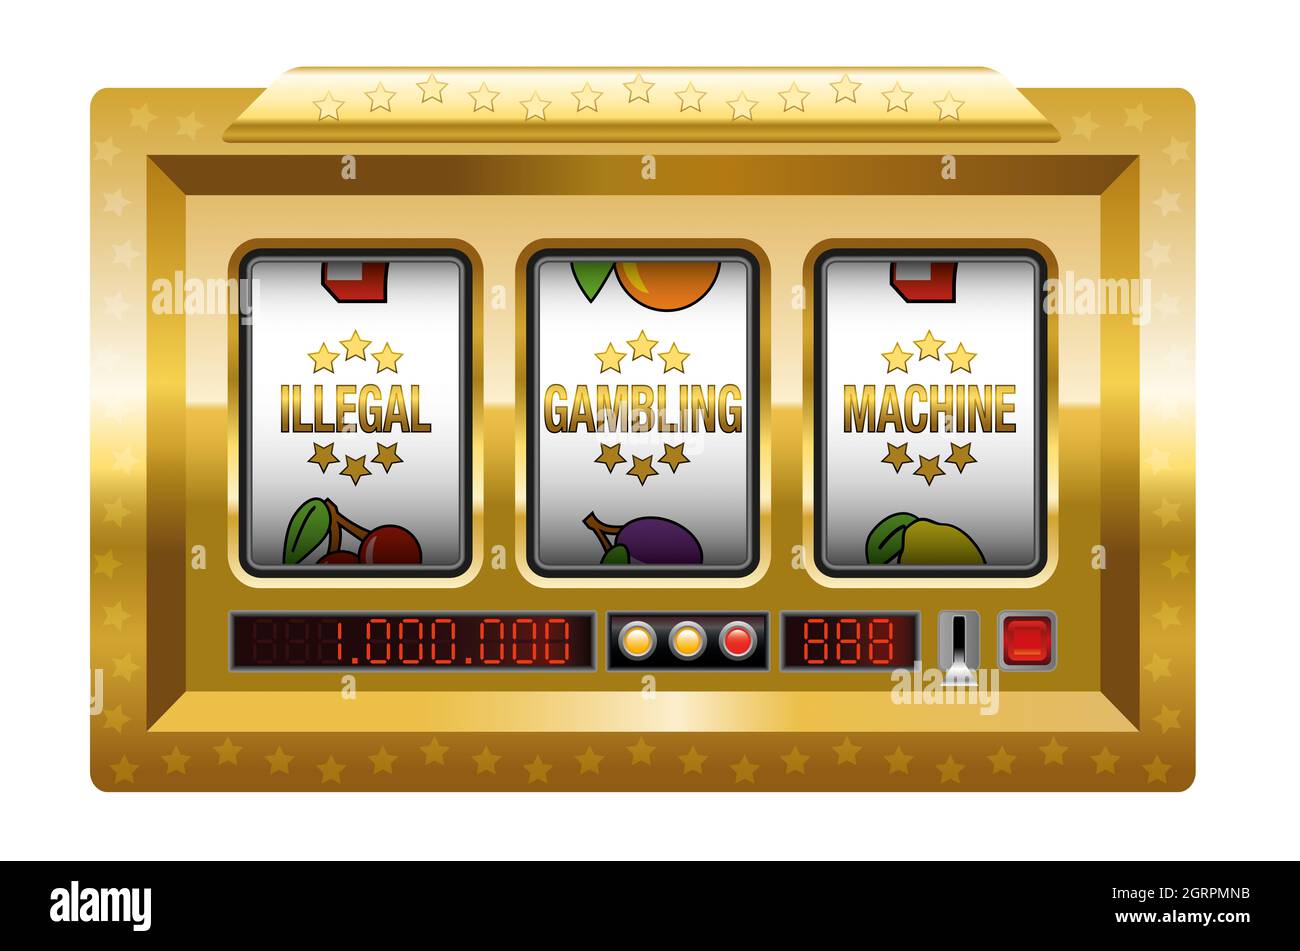 Illegale Glücksspielautomaten - goldener Spielautomat mit drei Walzen Schriftzug ILLEGALE GLÜCKSSPIELMASCHINE - Illustration auf weißem Hintergrund. Stockfoto